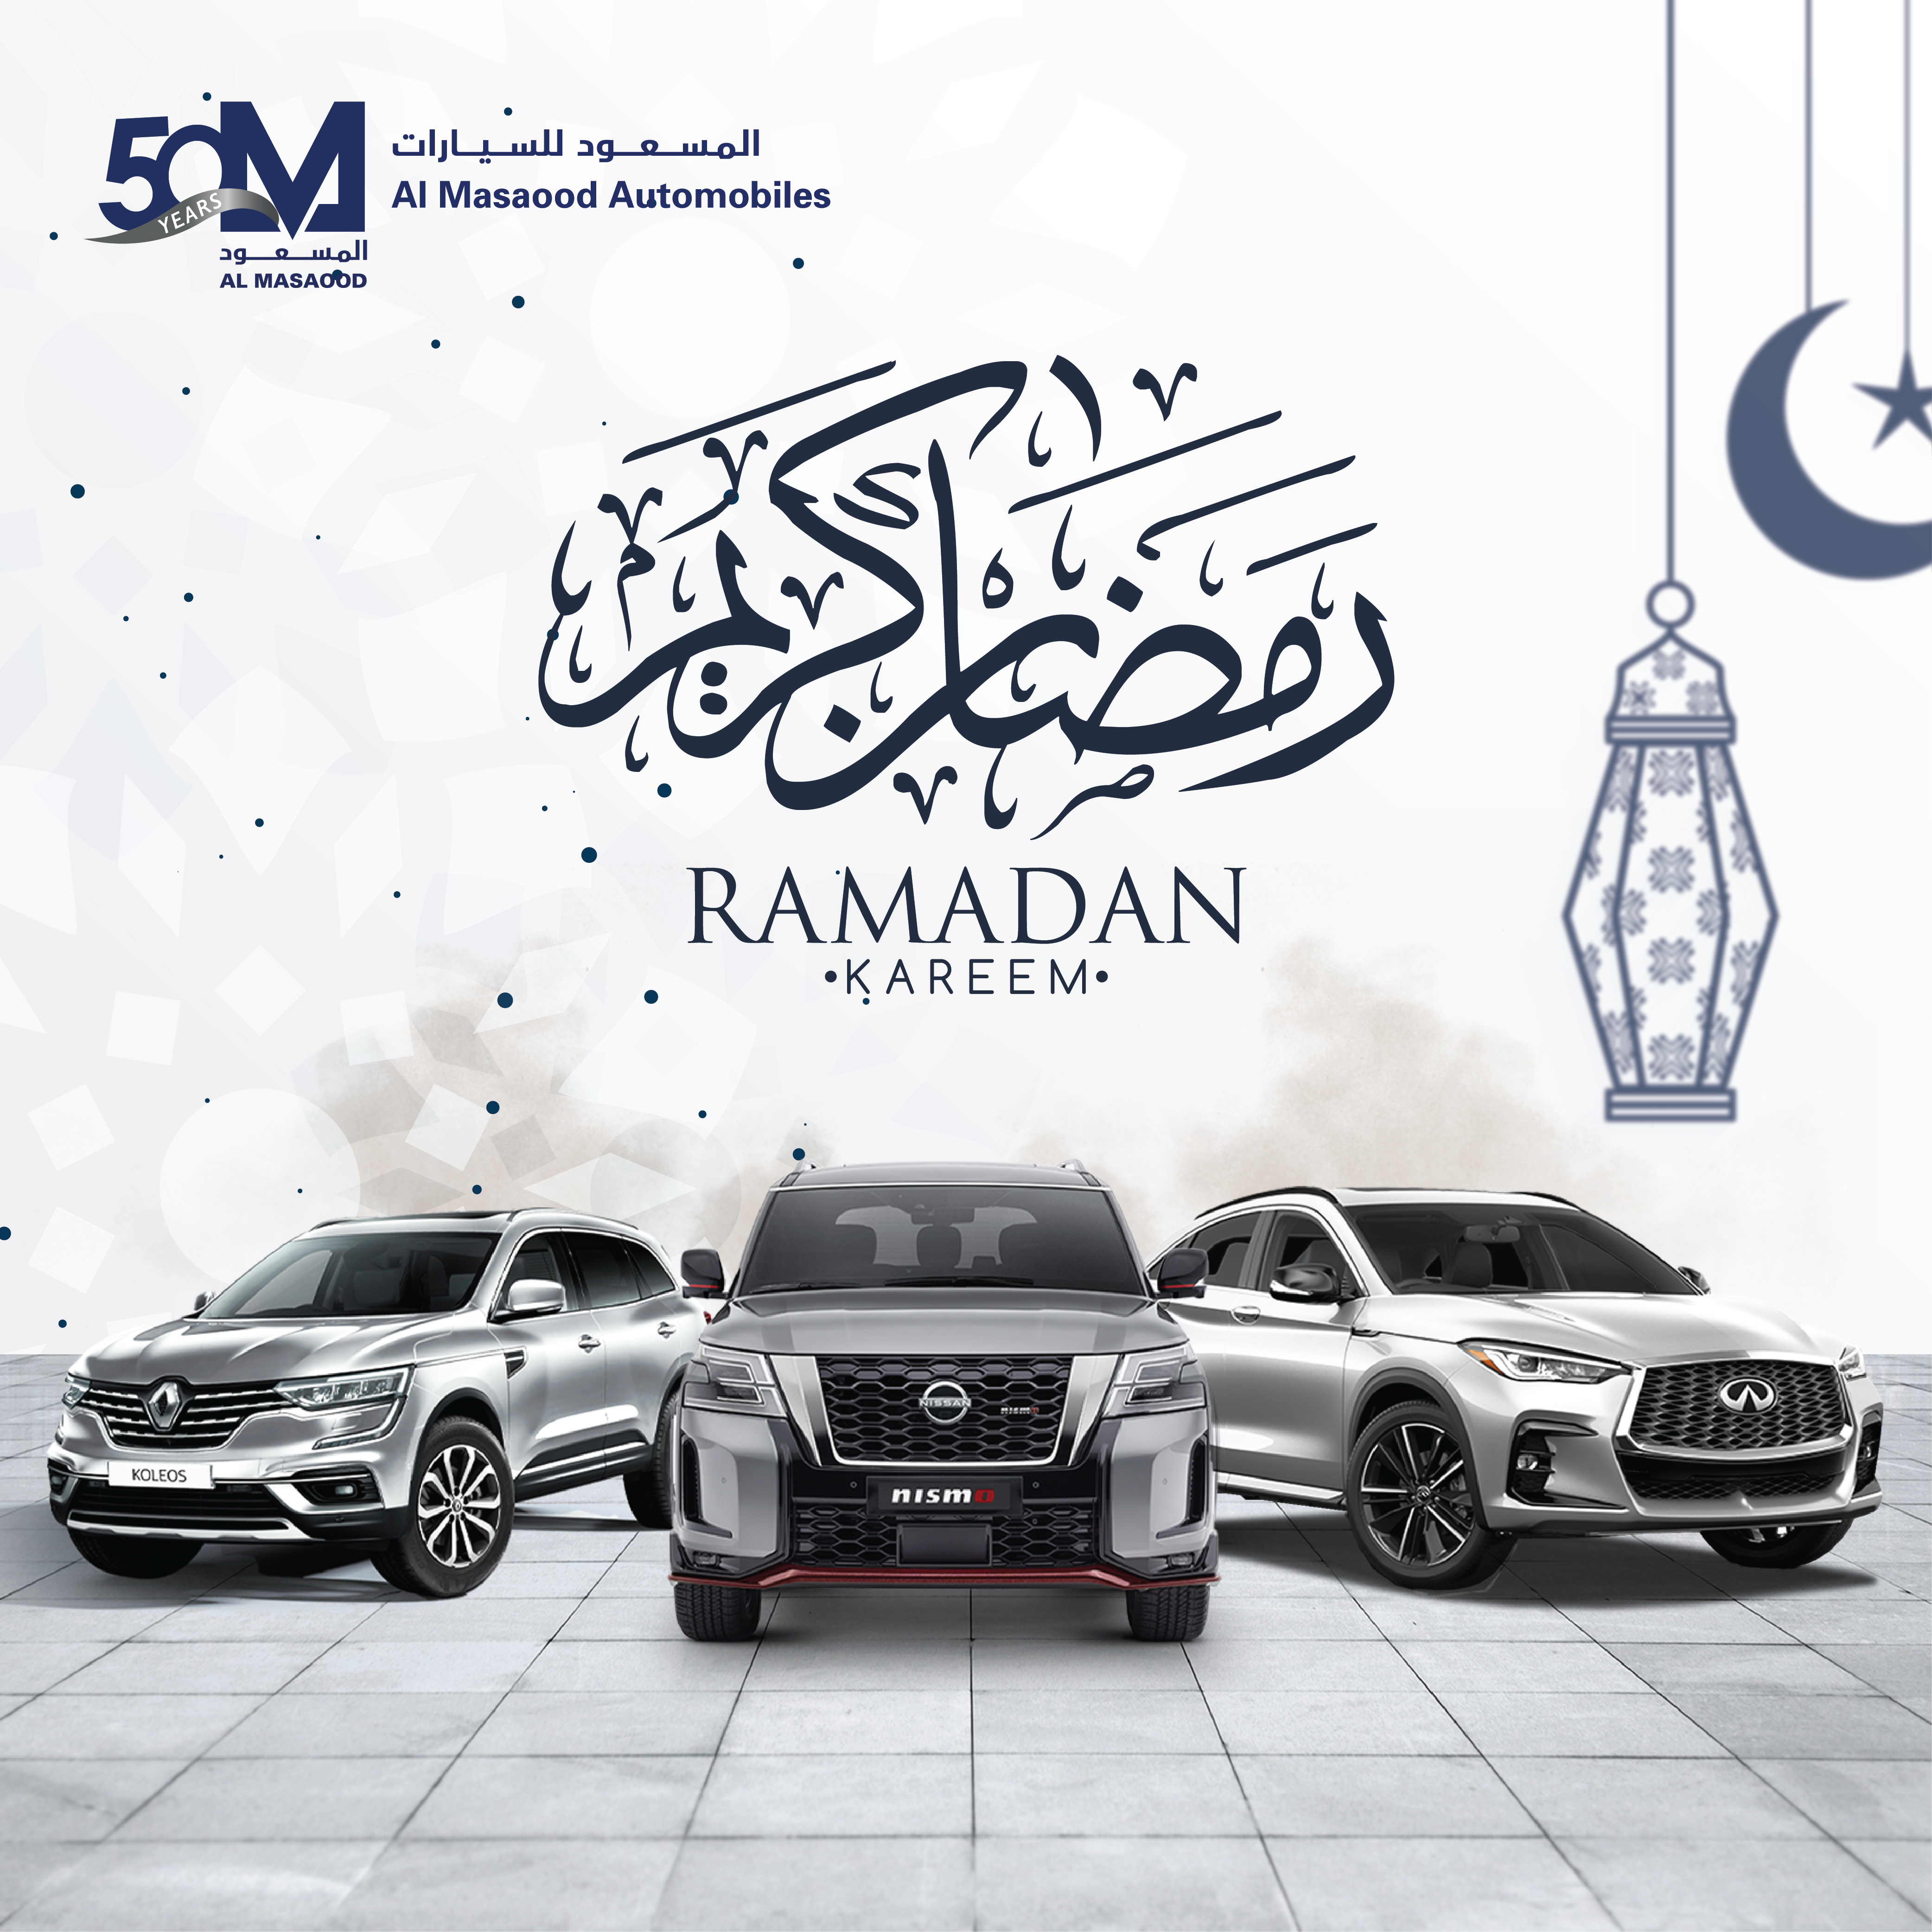 "المسعود للسيارات" تطلق عروضاً رمضانية حصرية على "نيسان" و"إنفينيتي" و"رينو"